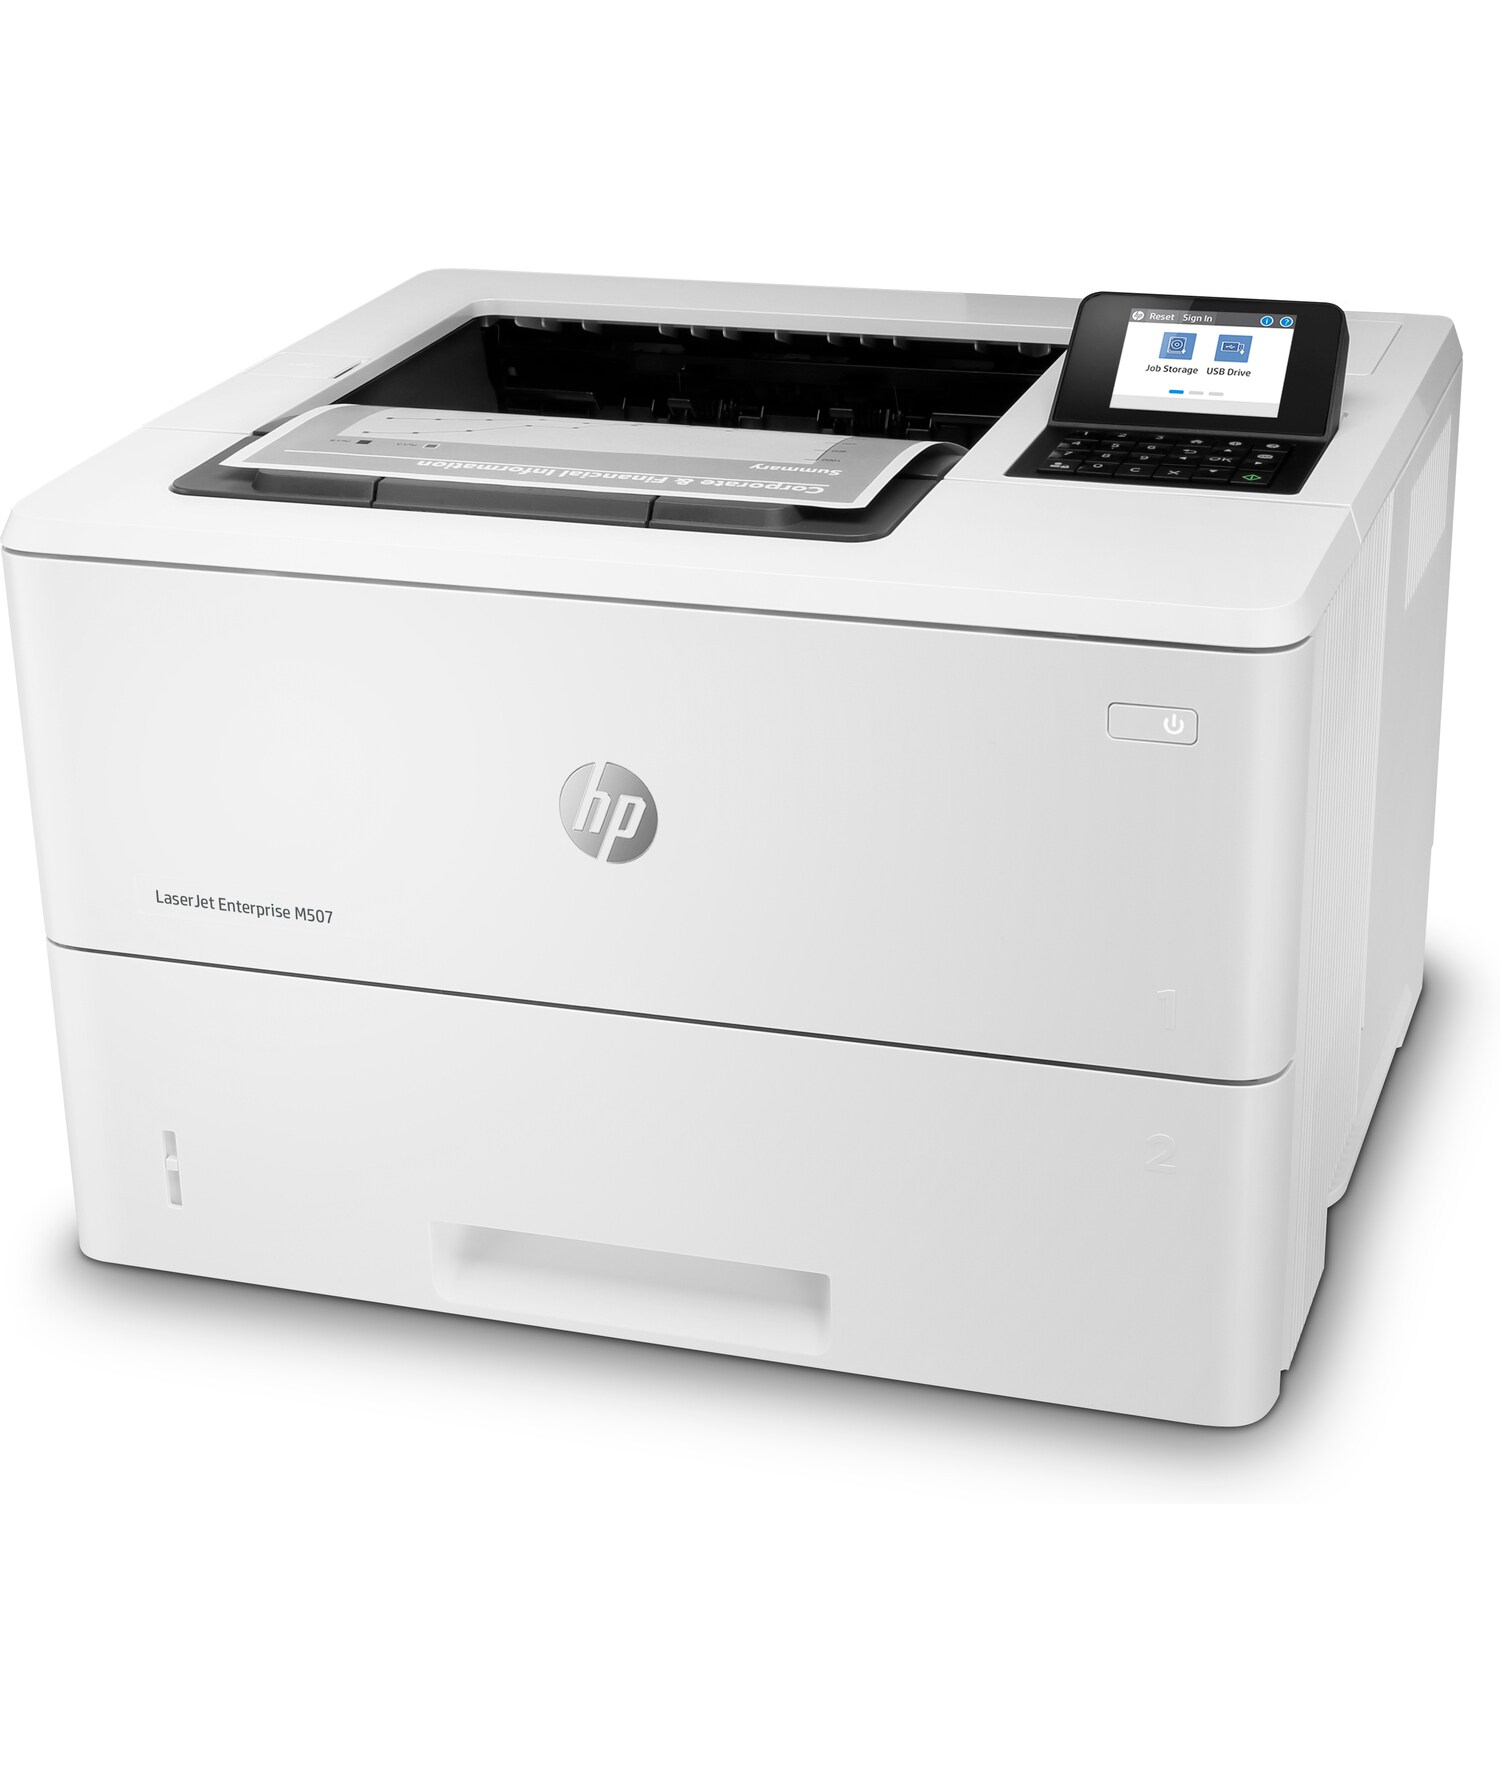 HP LaserJet Enterprise M507 M507n Desktop Laser Printer - Monochrome - 45 ppm Mono - 1200 x 1200 dpi...